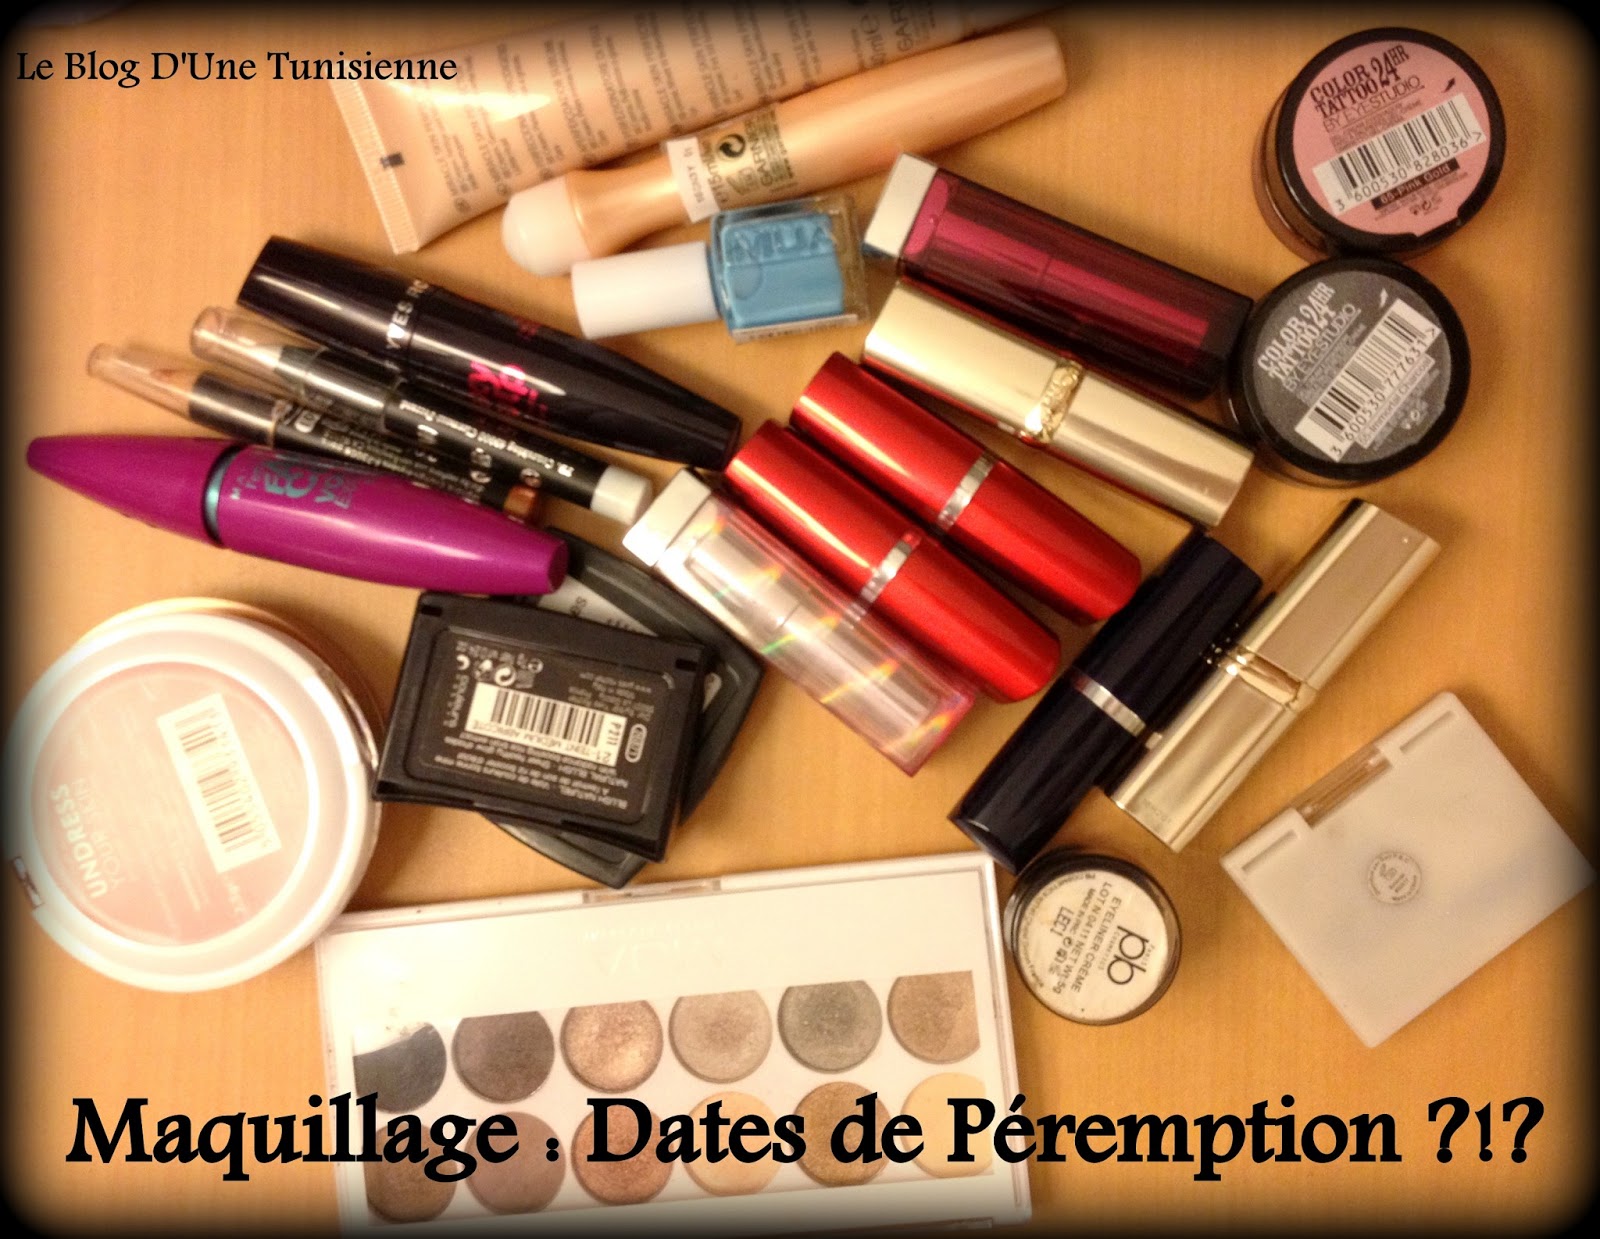 Maquillage : Date de Péremption - Le Blog D'Une Tunisienne